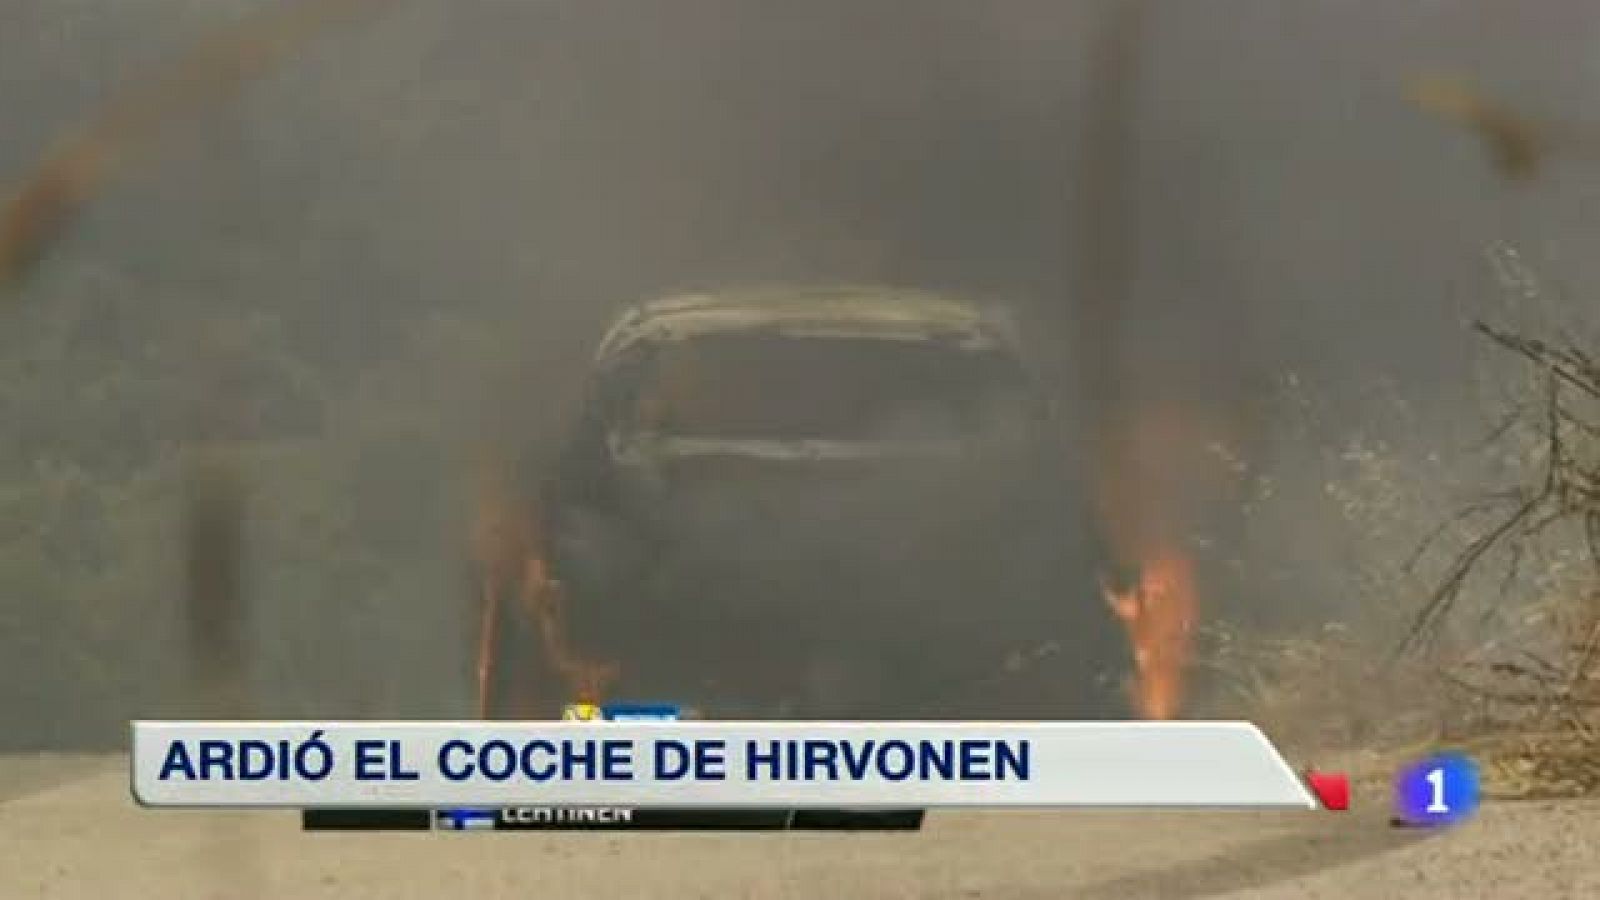 Telediario 1: Irvonen abandona el Rally de Cerdeña al salir ardiendo su coche | RTVE Play